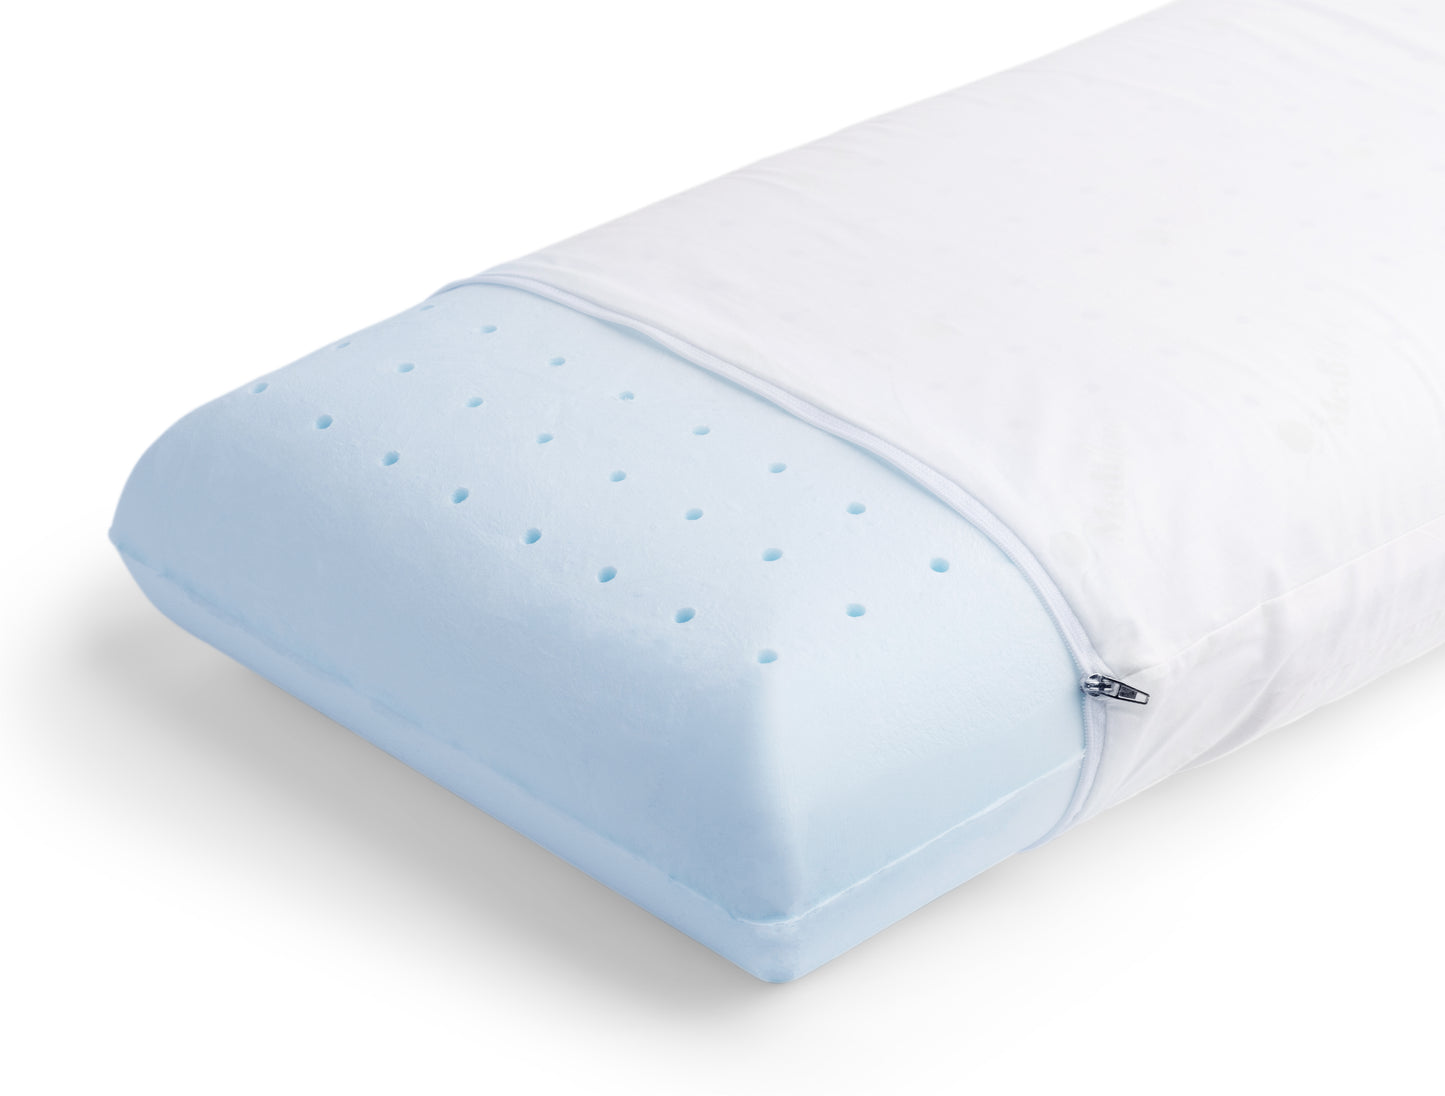 Mediflow Water Pillow - Original Cooling Memory Foam